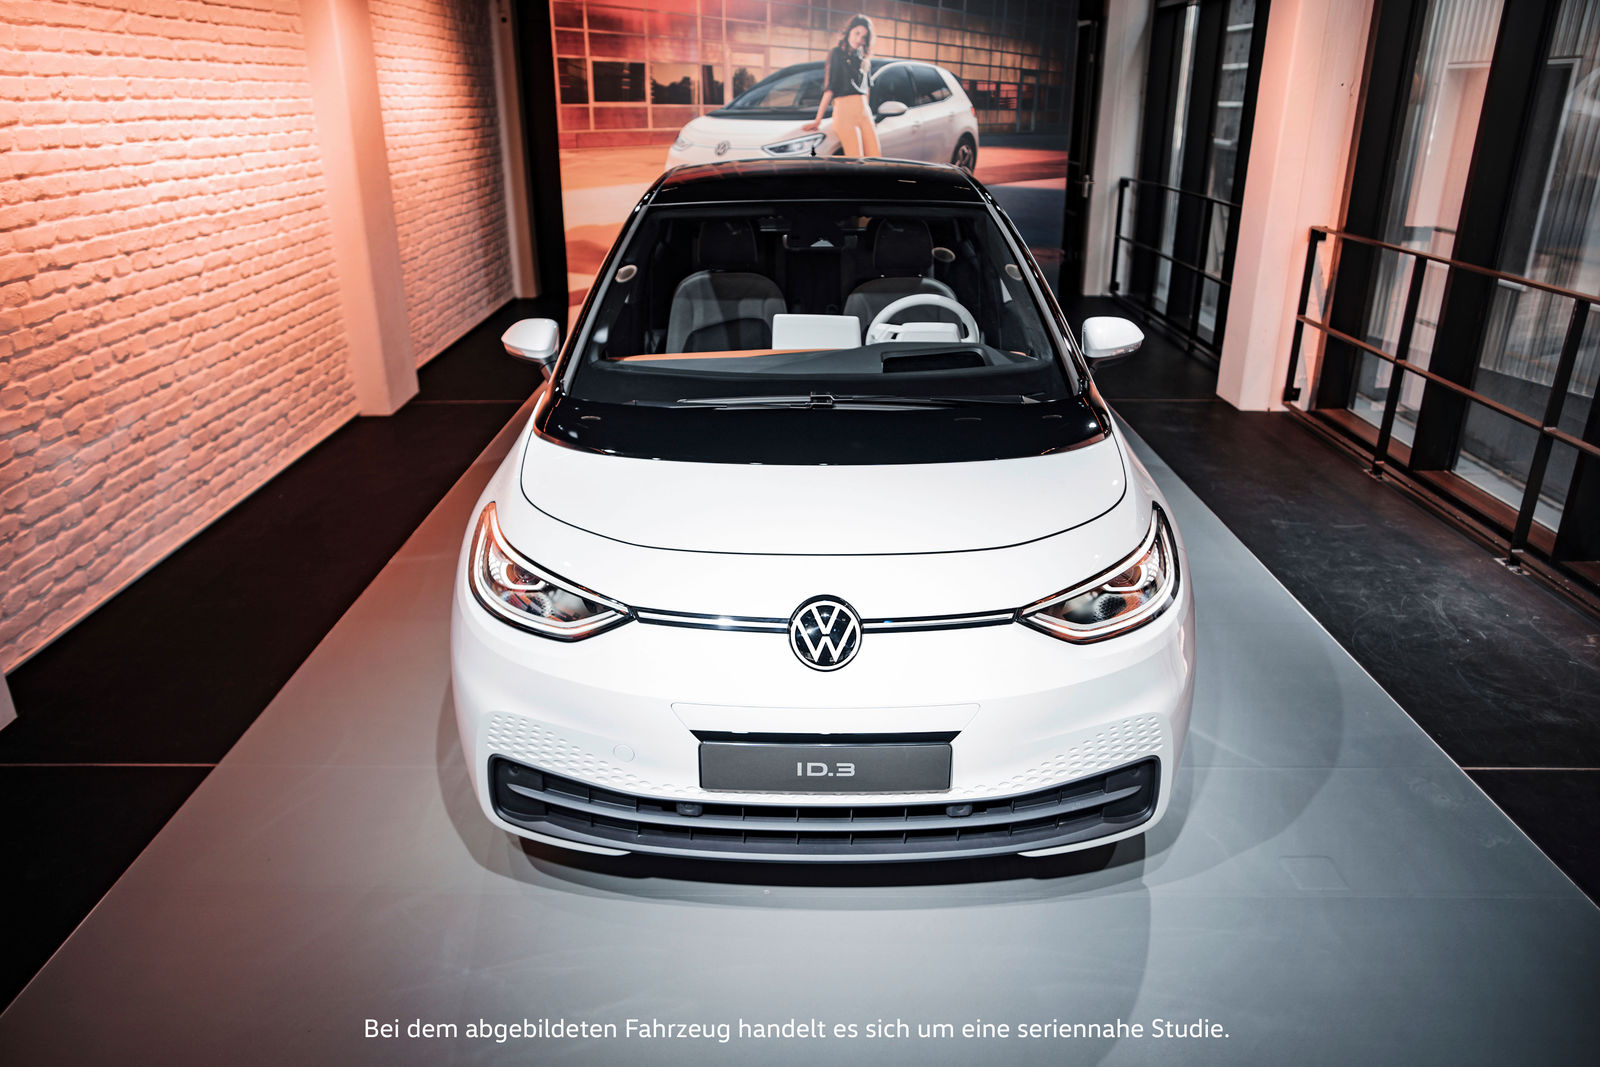 Verlängerung: Volkswagen ID.3 Pop-up Store München noch bis 27. August geöffnet